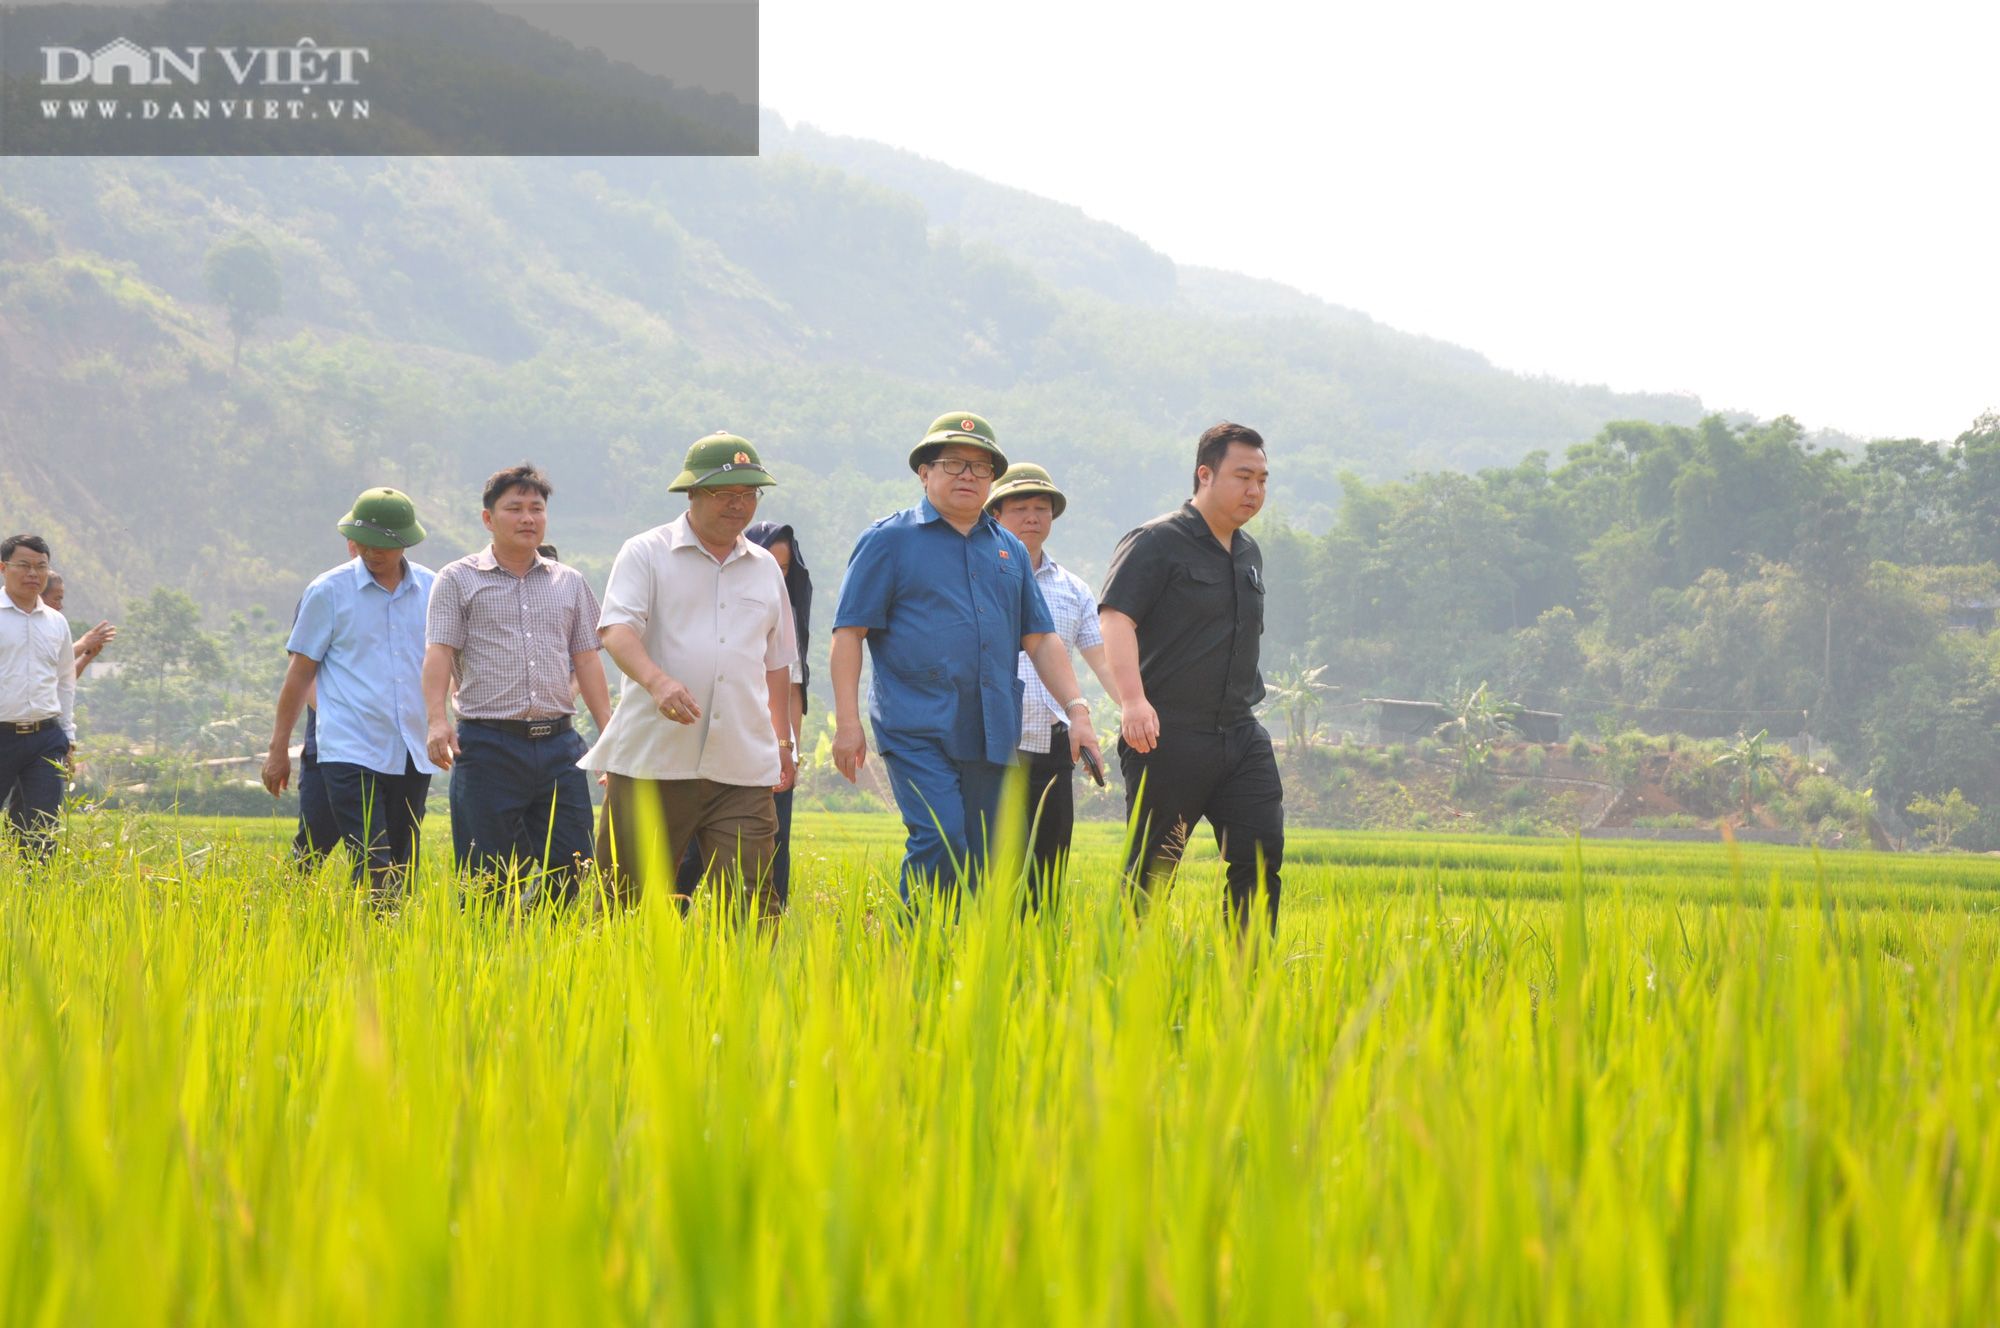 <b>Chủ tịch Hội Nông dân Việt Nam mách nước giúp nông dân Lai Châu trồng lúa theo tiêu chuẩn quốc tế</b>